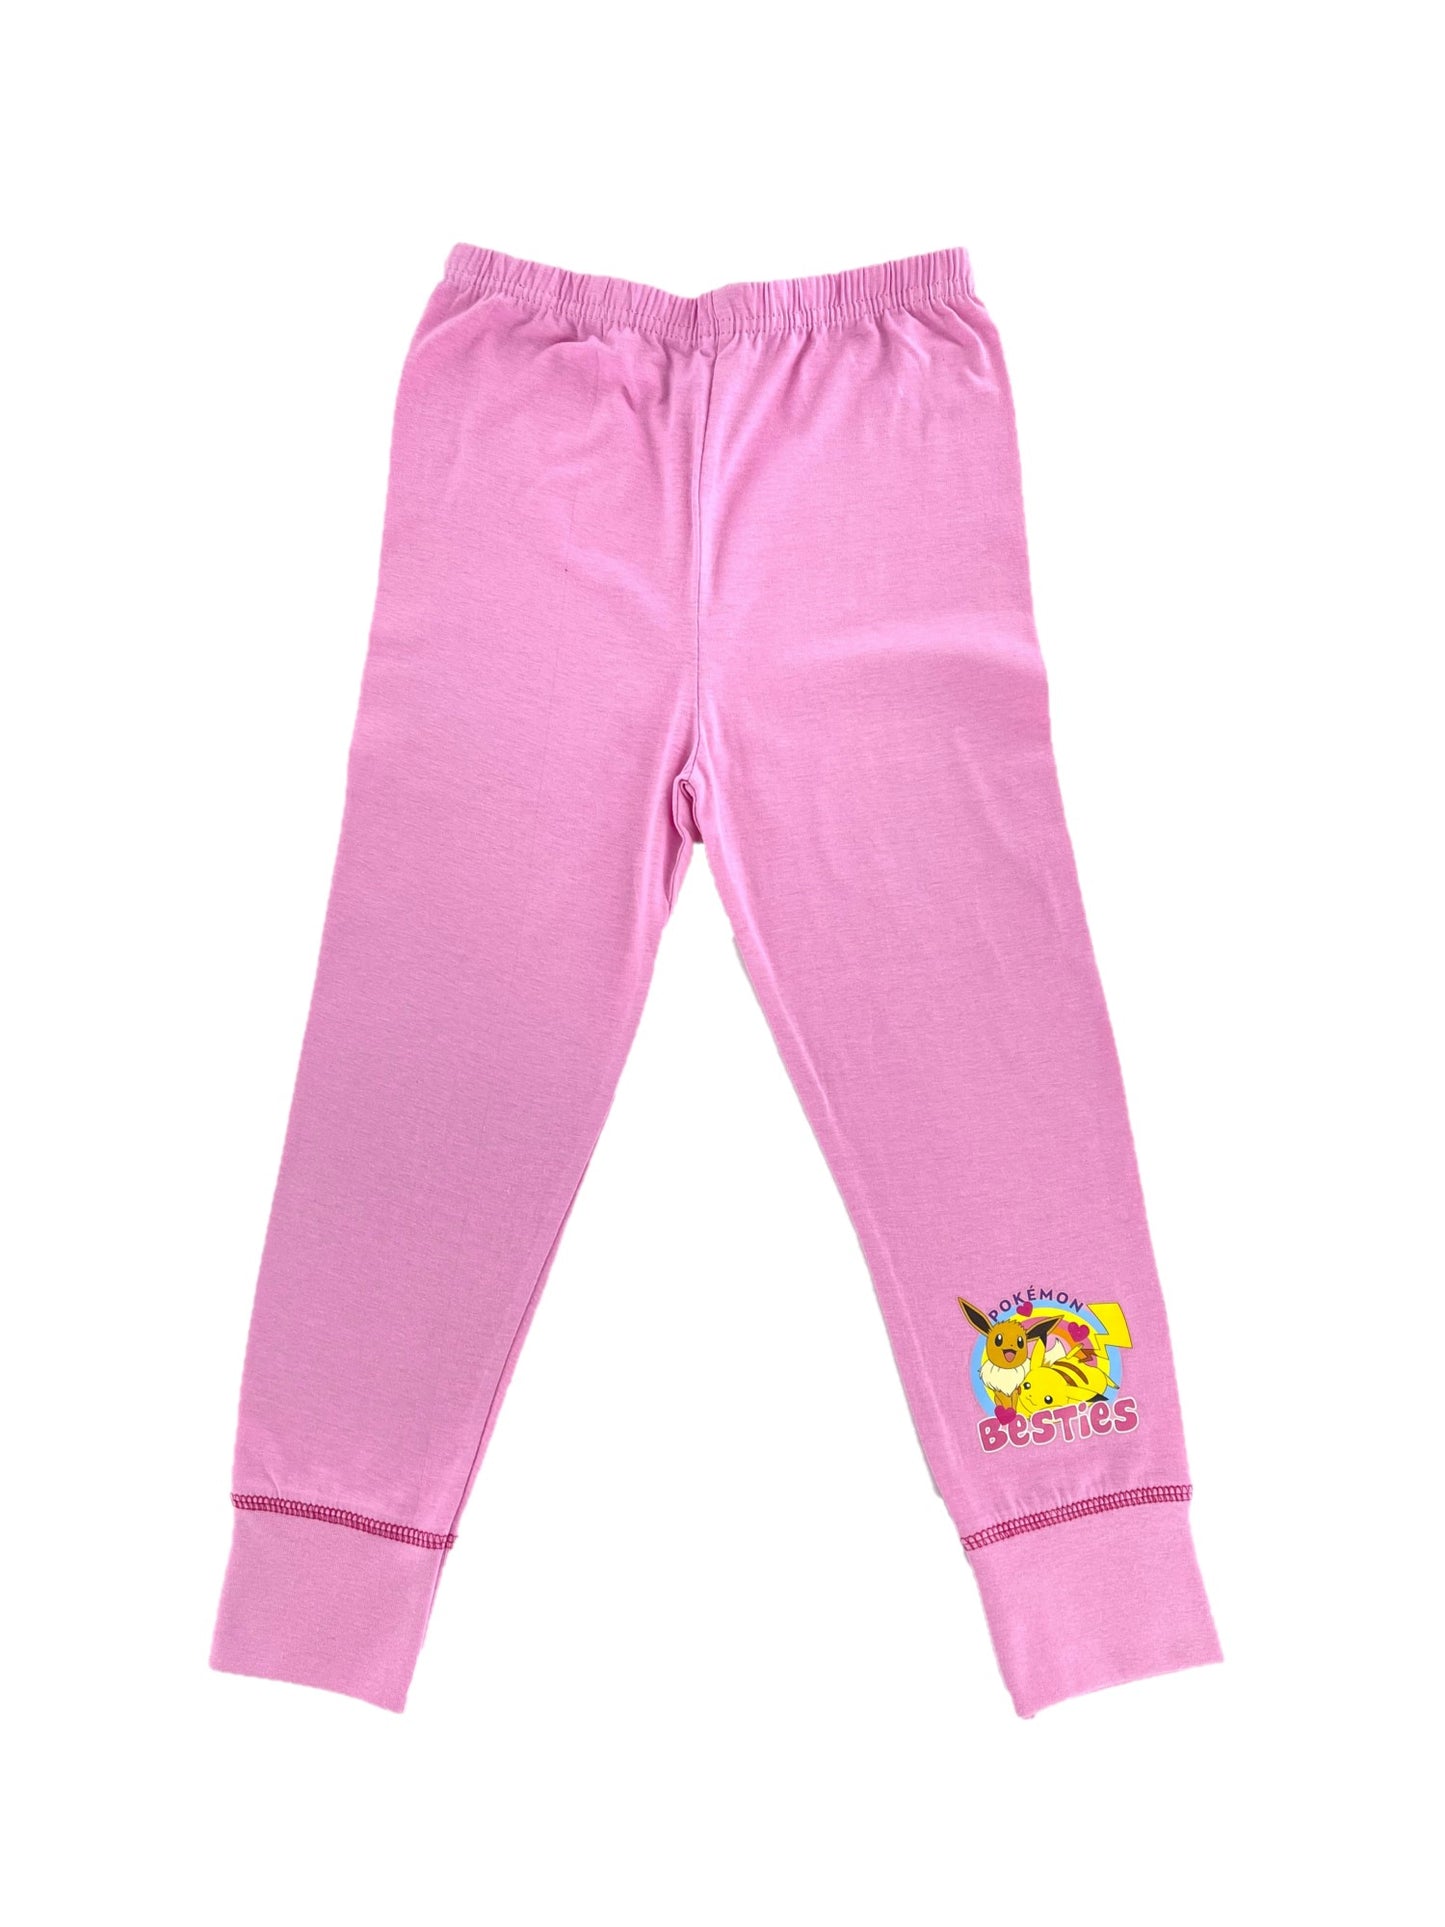 Girls' Pokémon Pikachu and Eevee "Best Friends" Pyjamas